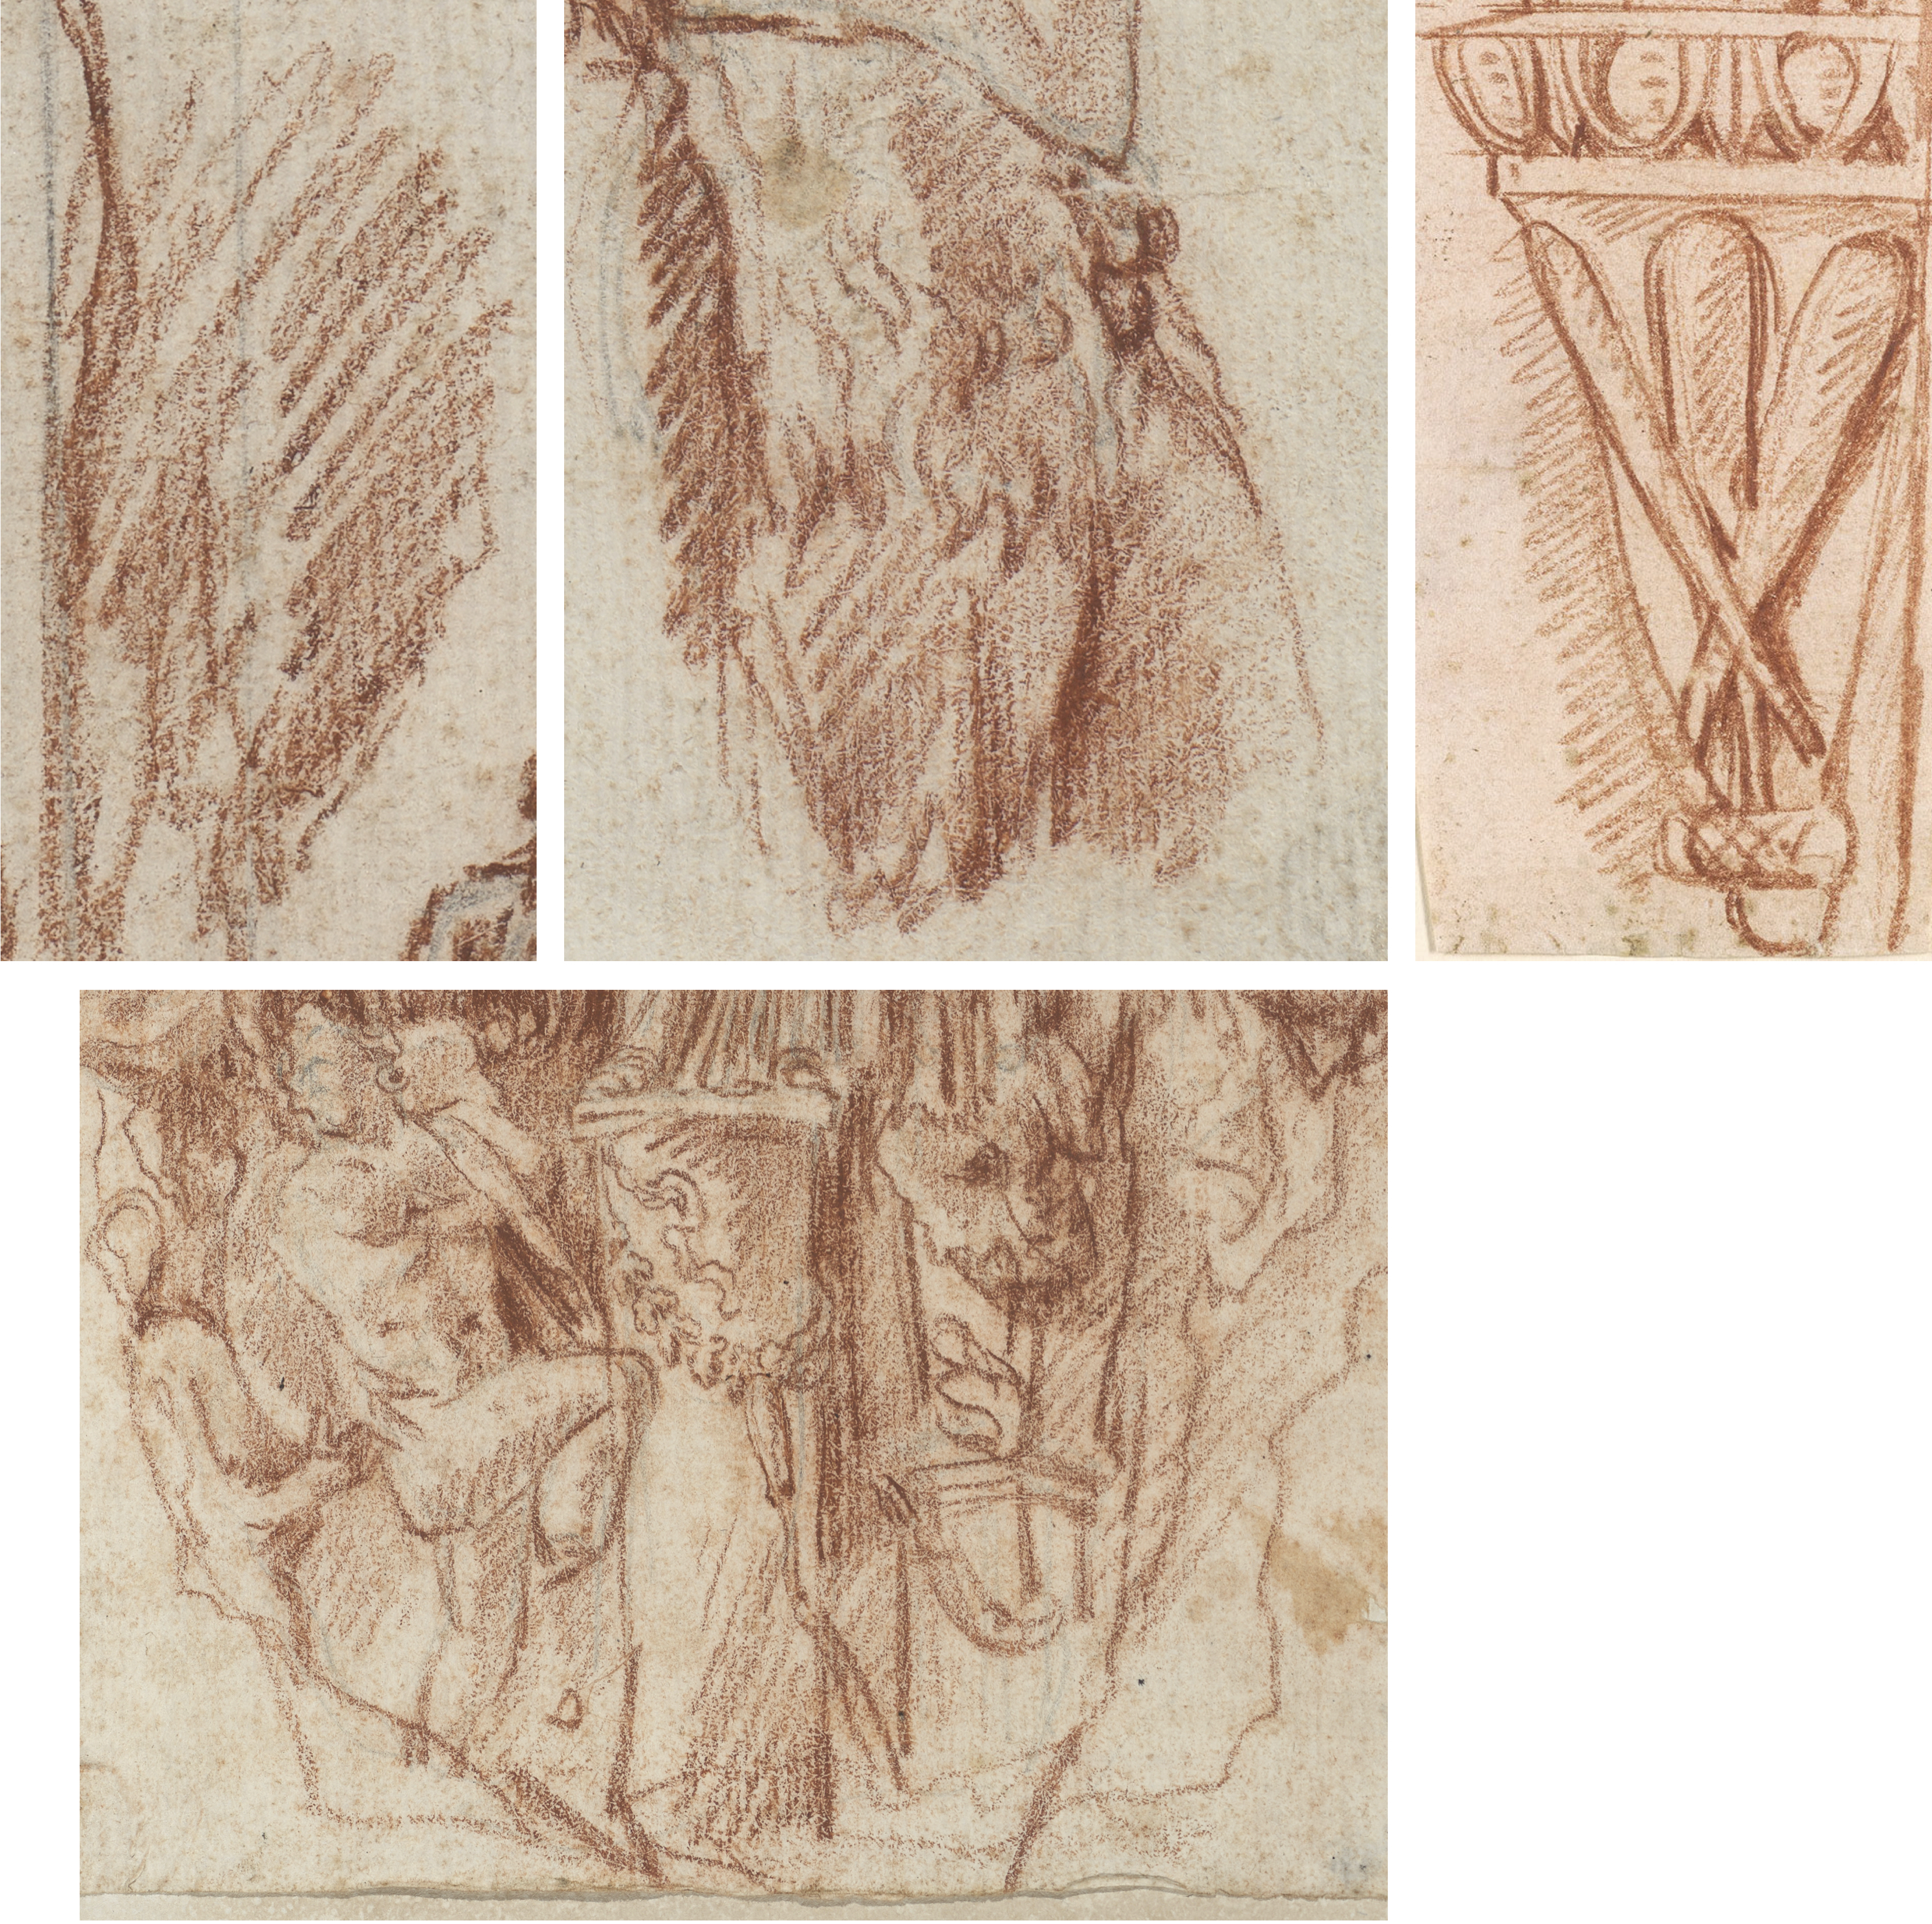 Vier Zeichnungen mit Details von Figuren und Ornamenten.